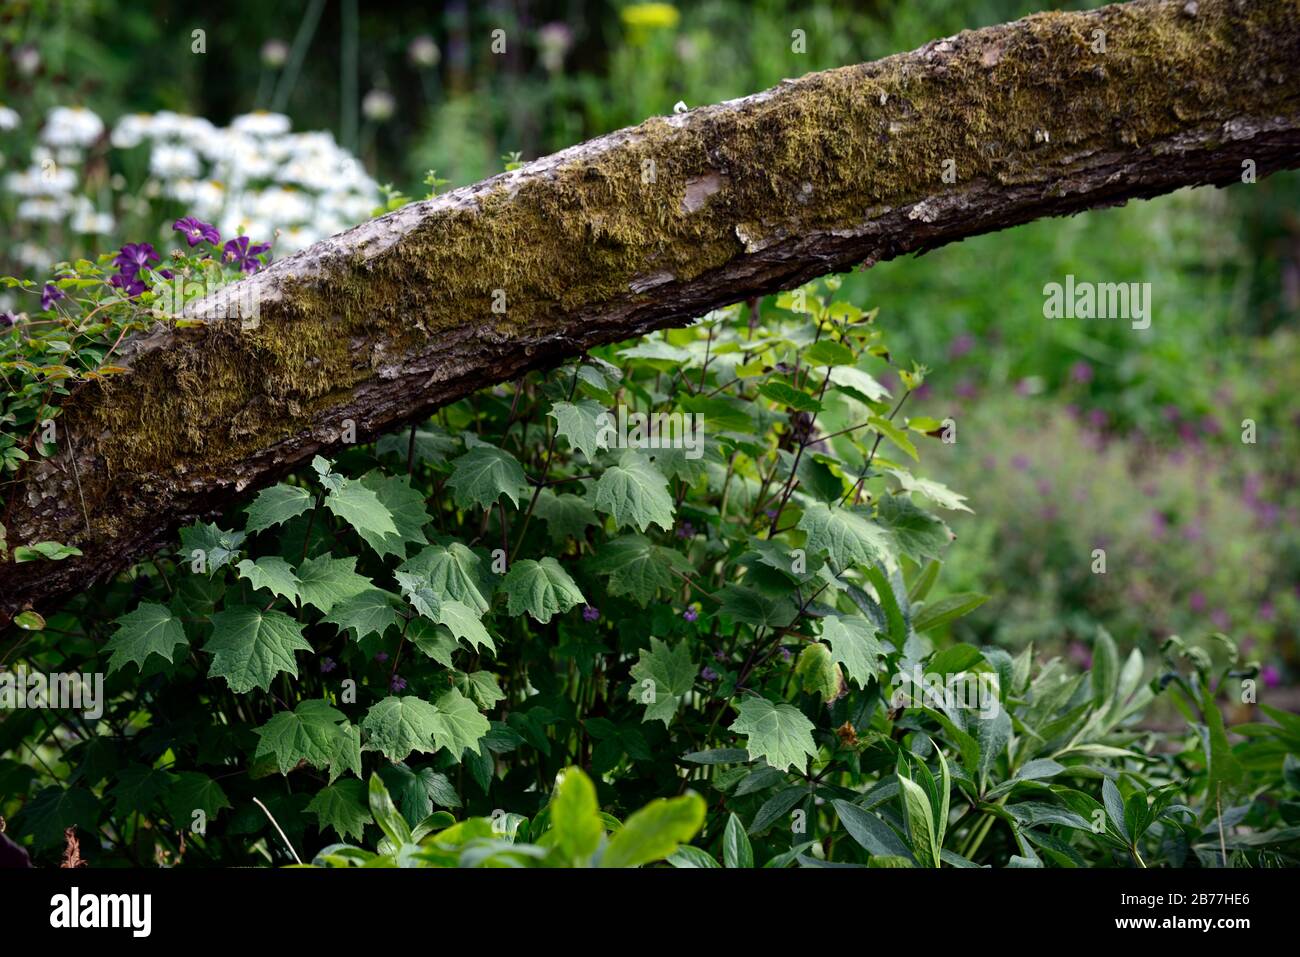 kirengeshoma palmata,foliage,leaves,wood,woodland,shade,shady,shaded,tree trunk,woodland garden,RM Floral Stock Photo